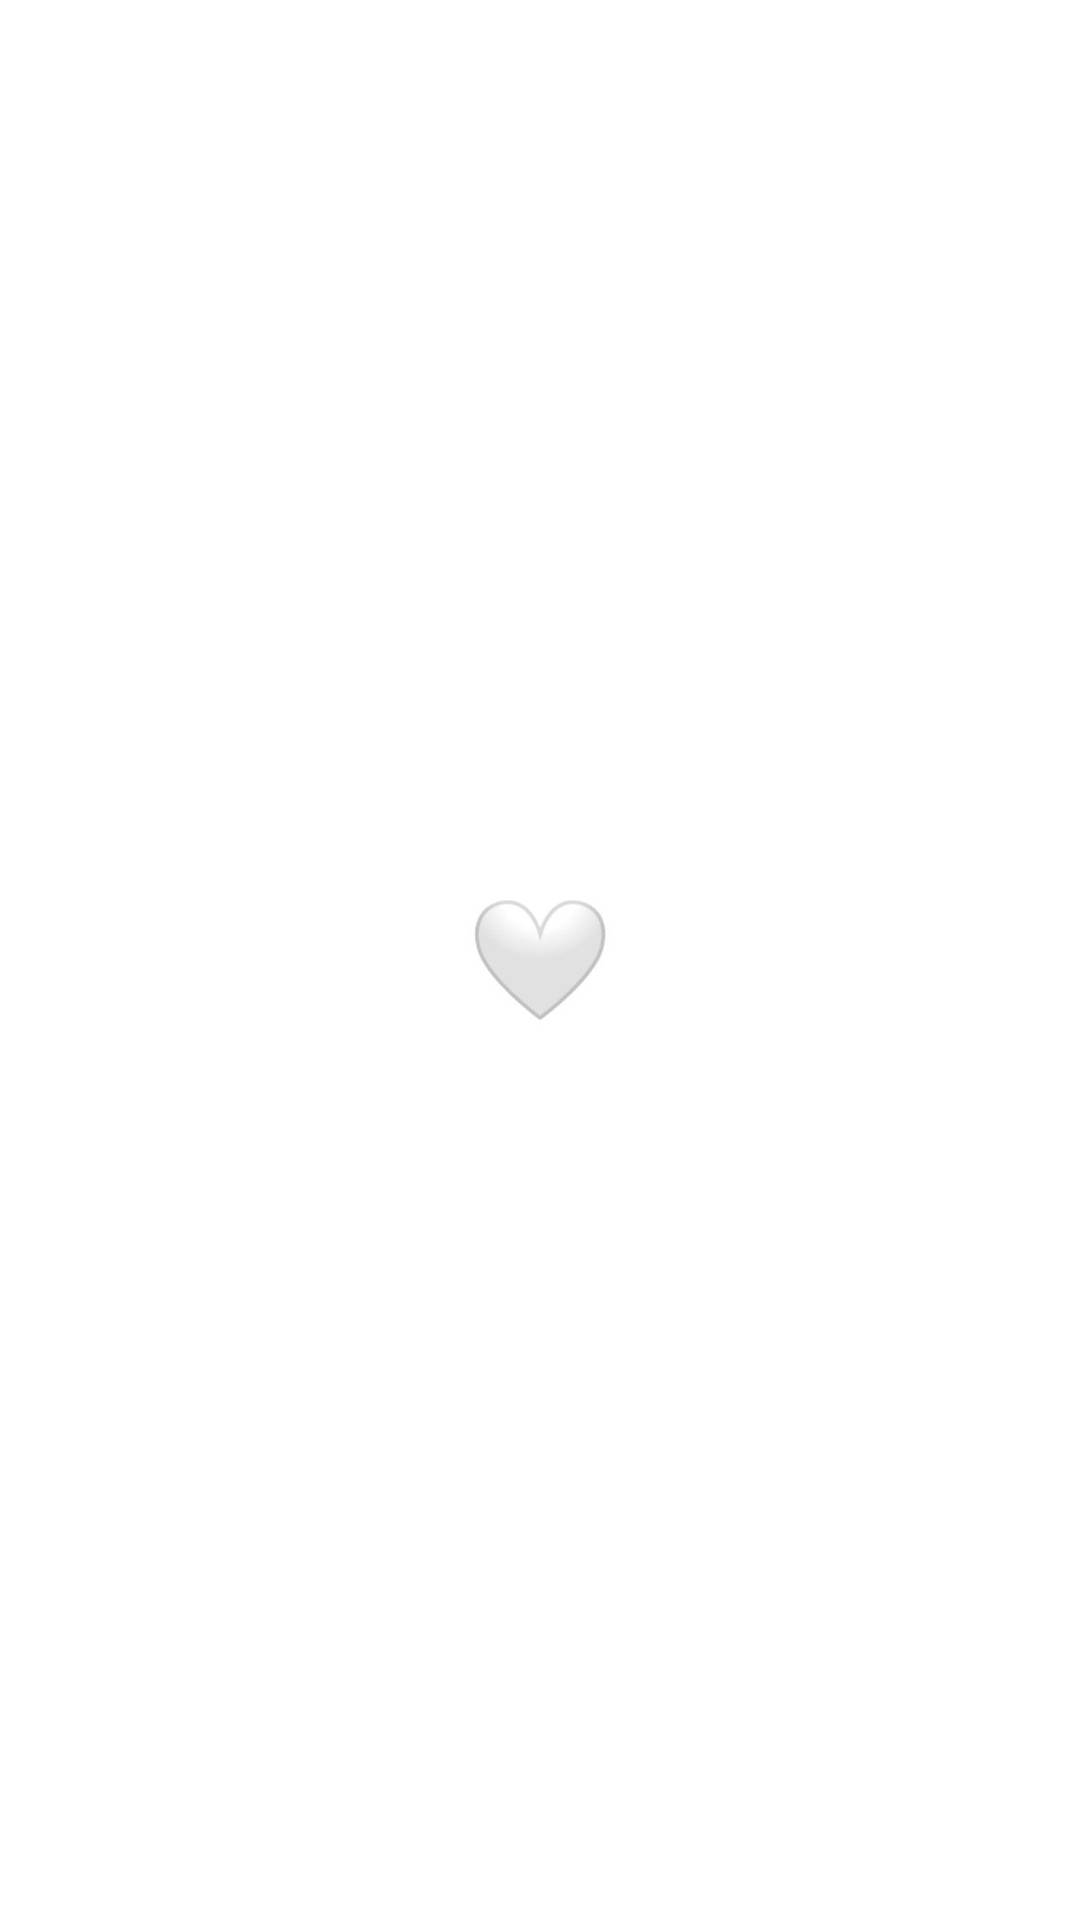 White Heart Emoticon